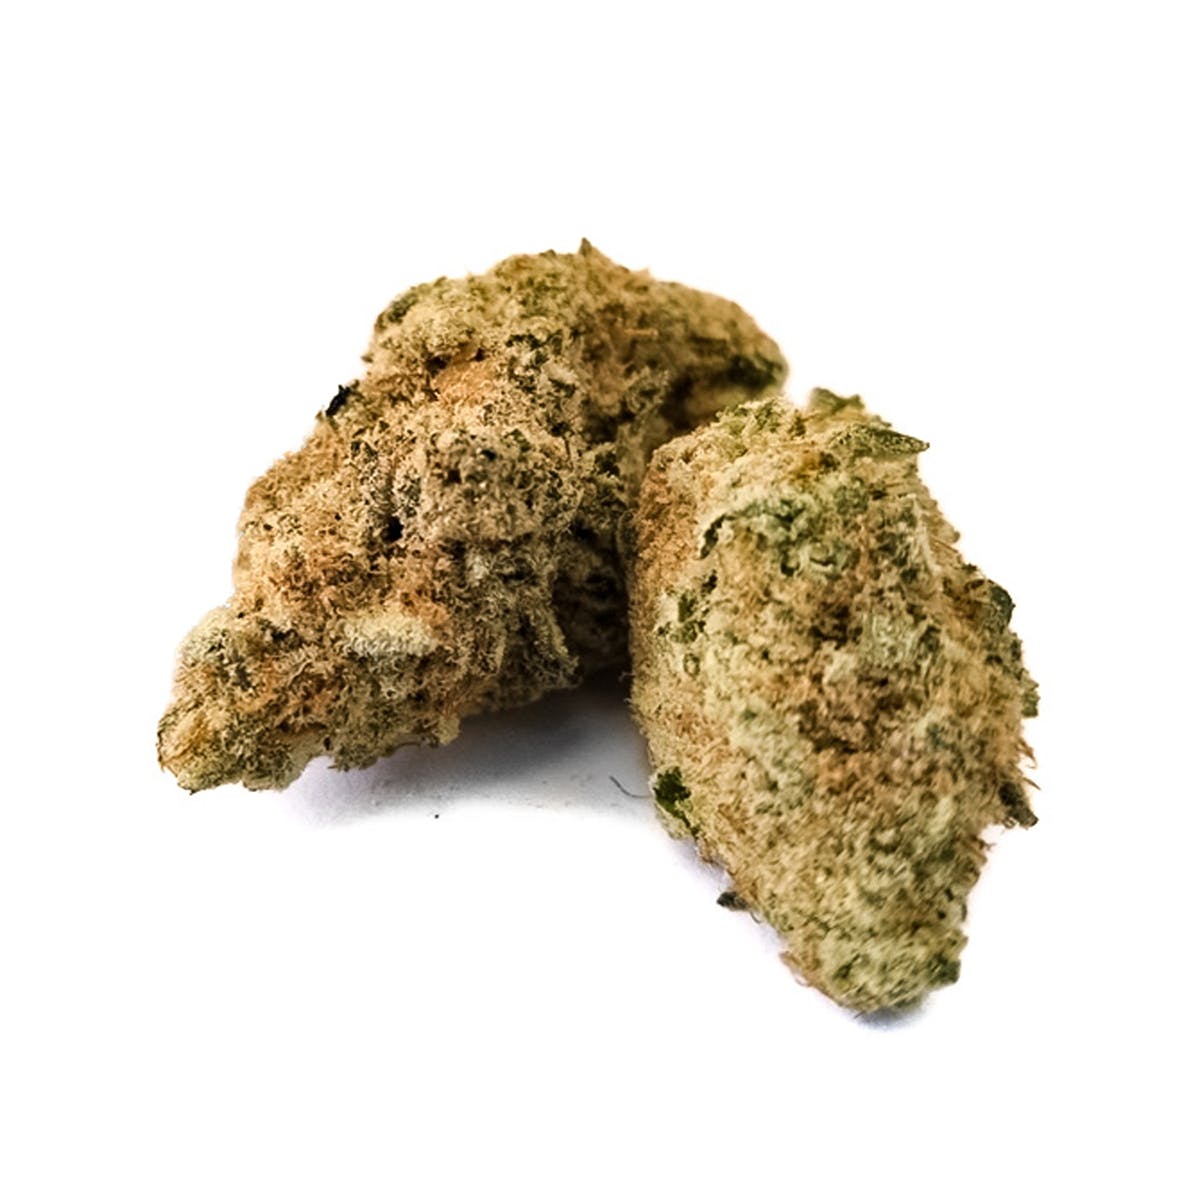 marijuana-dispensaries-culta-in-baltimore-girl-scout-cookies-231